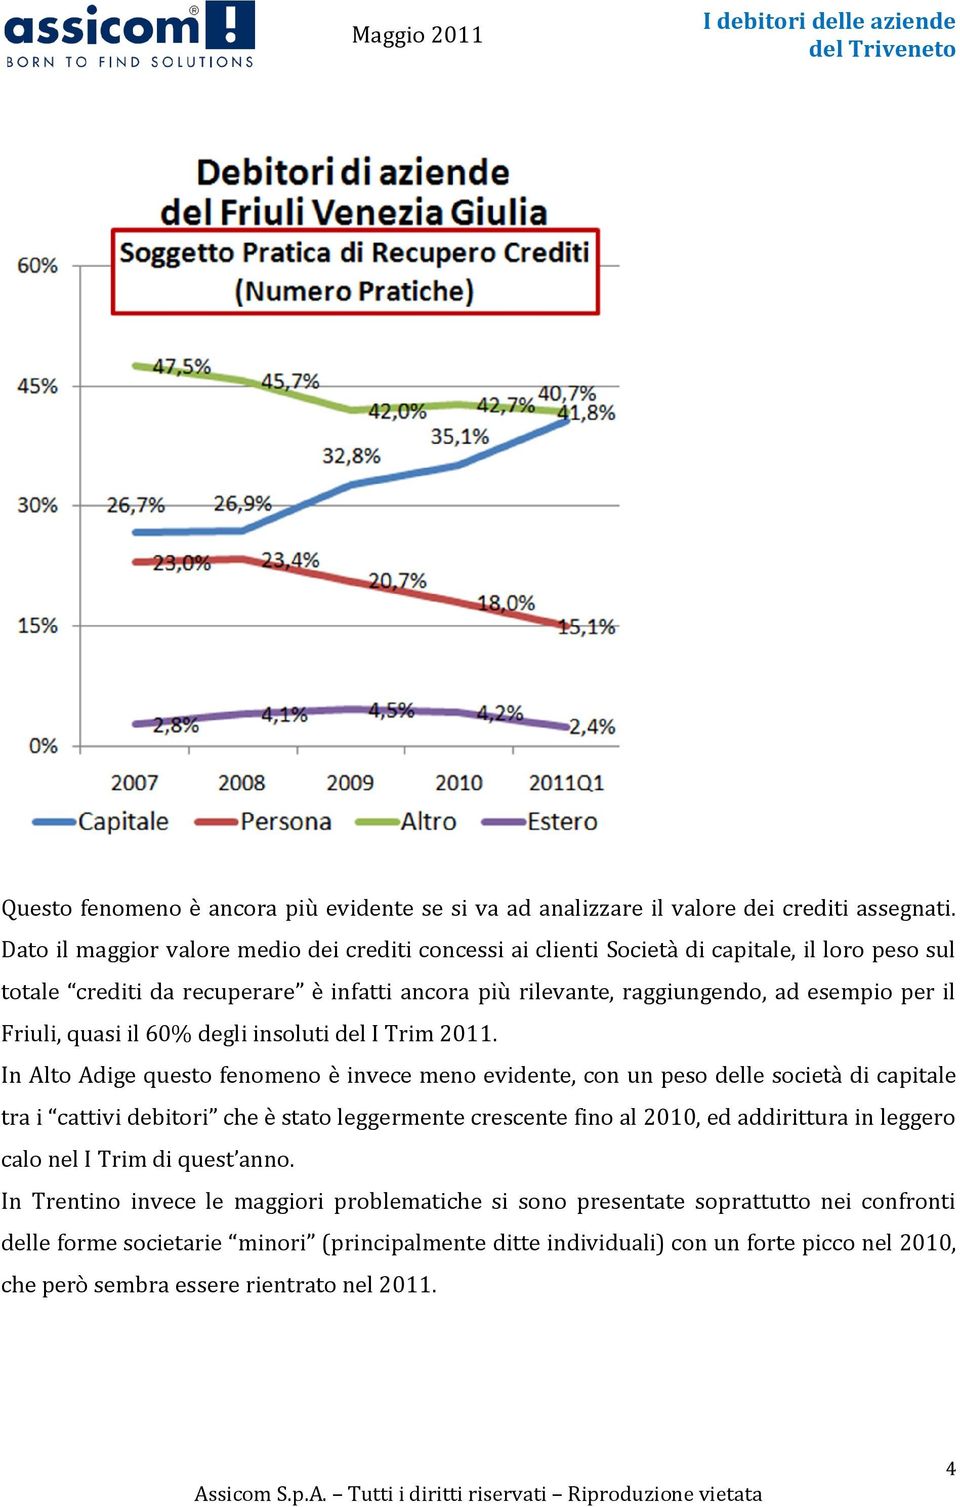 Friuli, quasi il 60% degli insoluti del I Trim 2011.